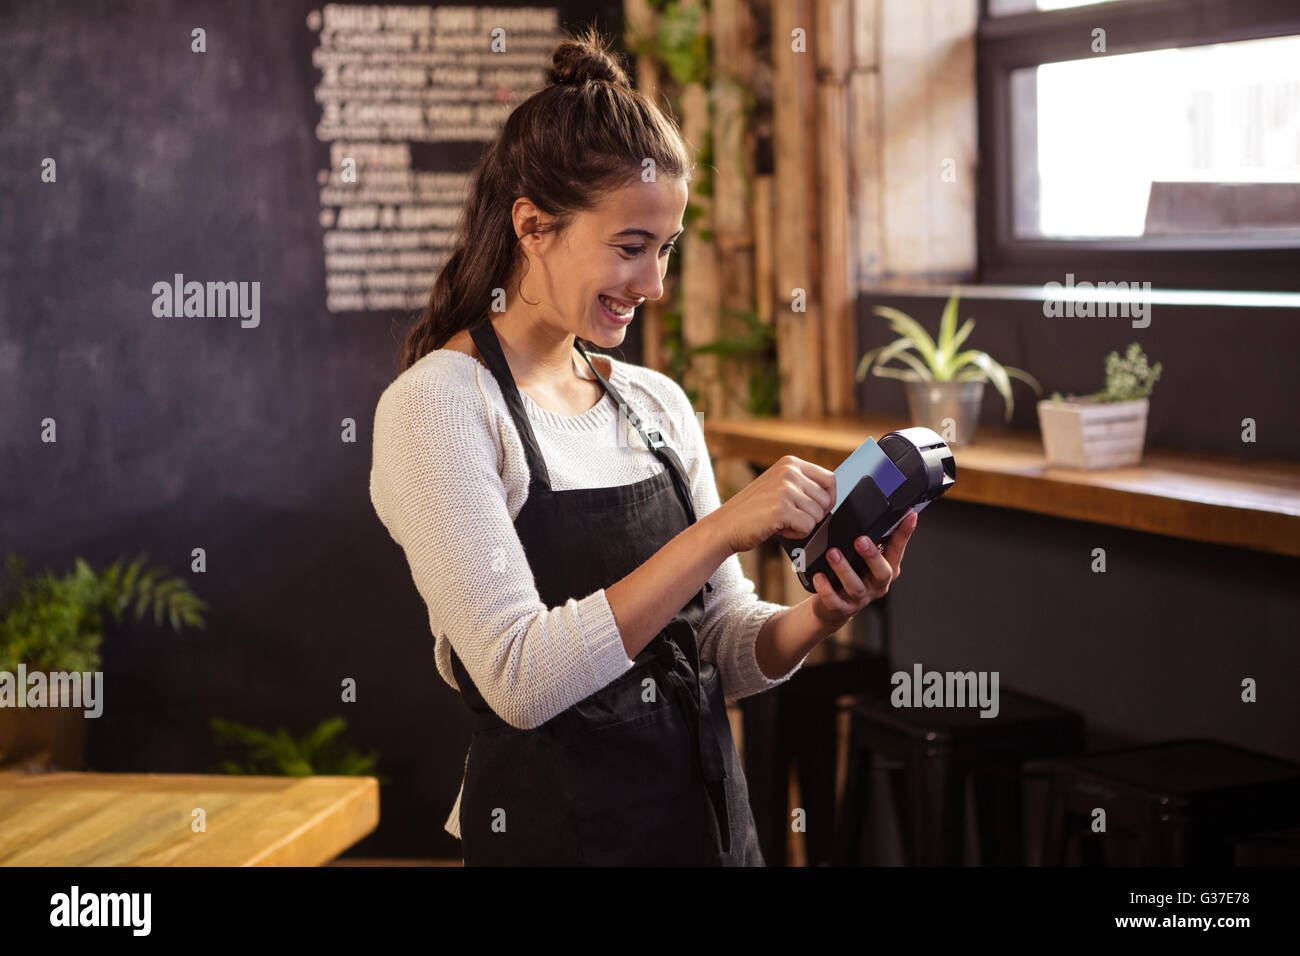 Smiling waitress using a bank card reader Stock Photo